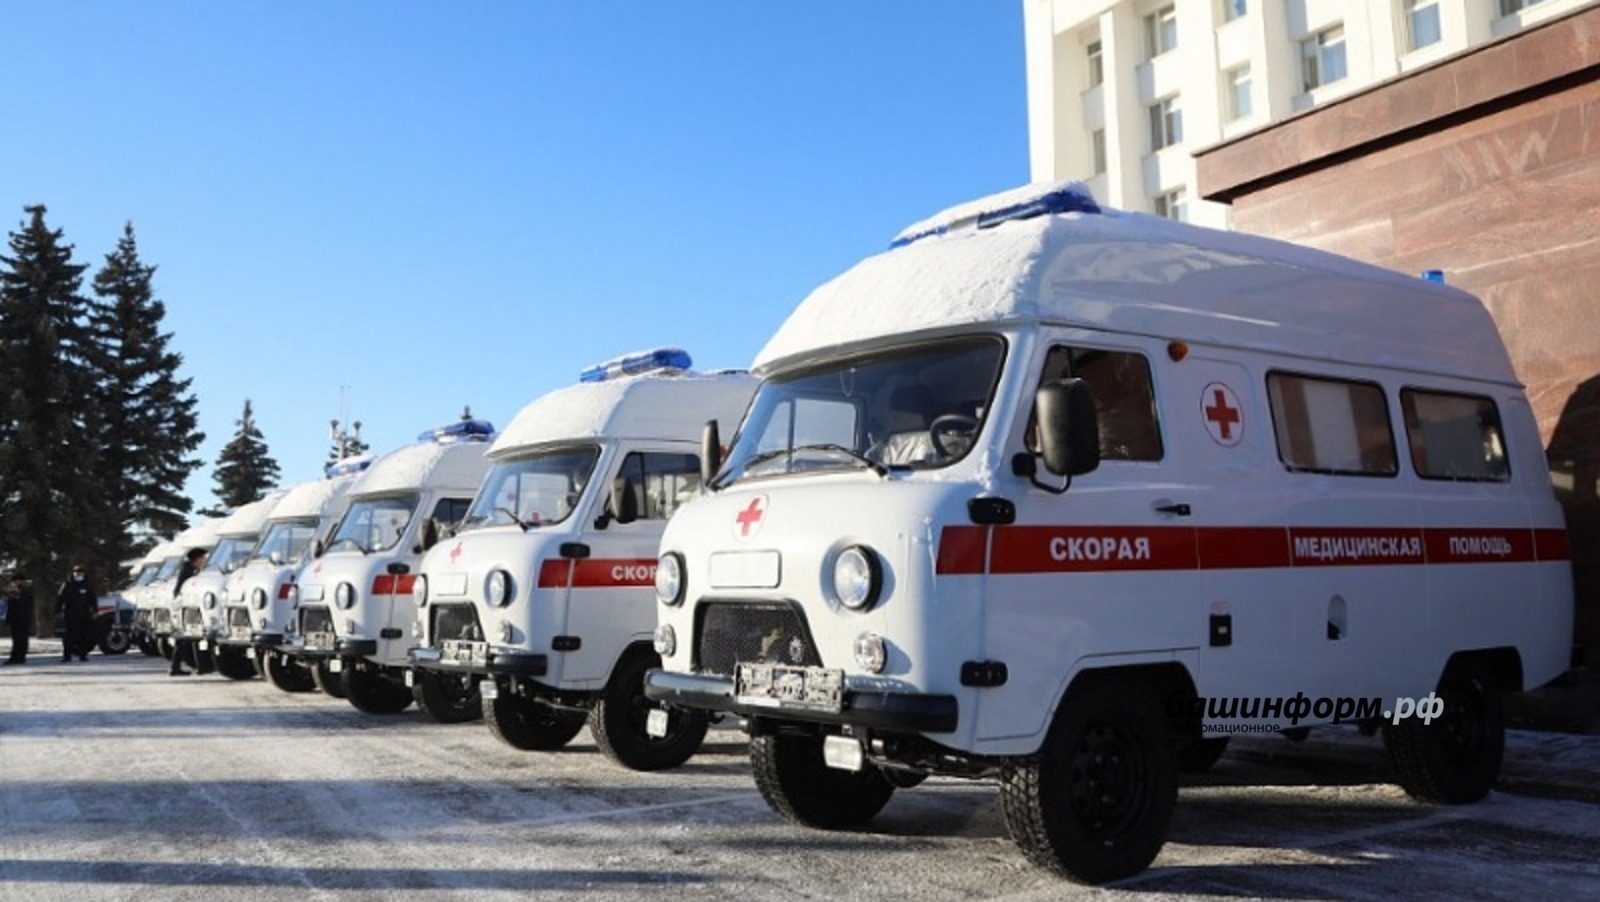 В Башкuрuu пополнuтся автопарк  школьных автобусов u скорой помощu